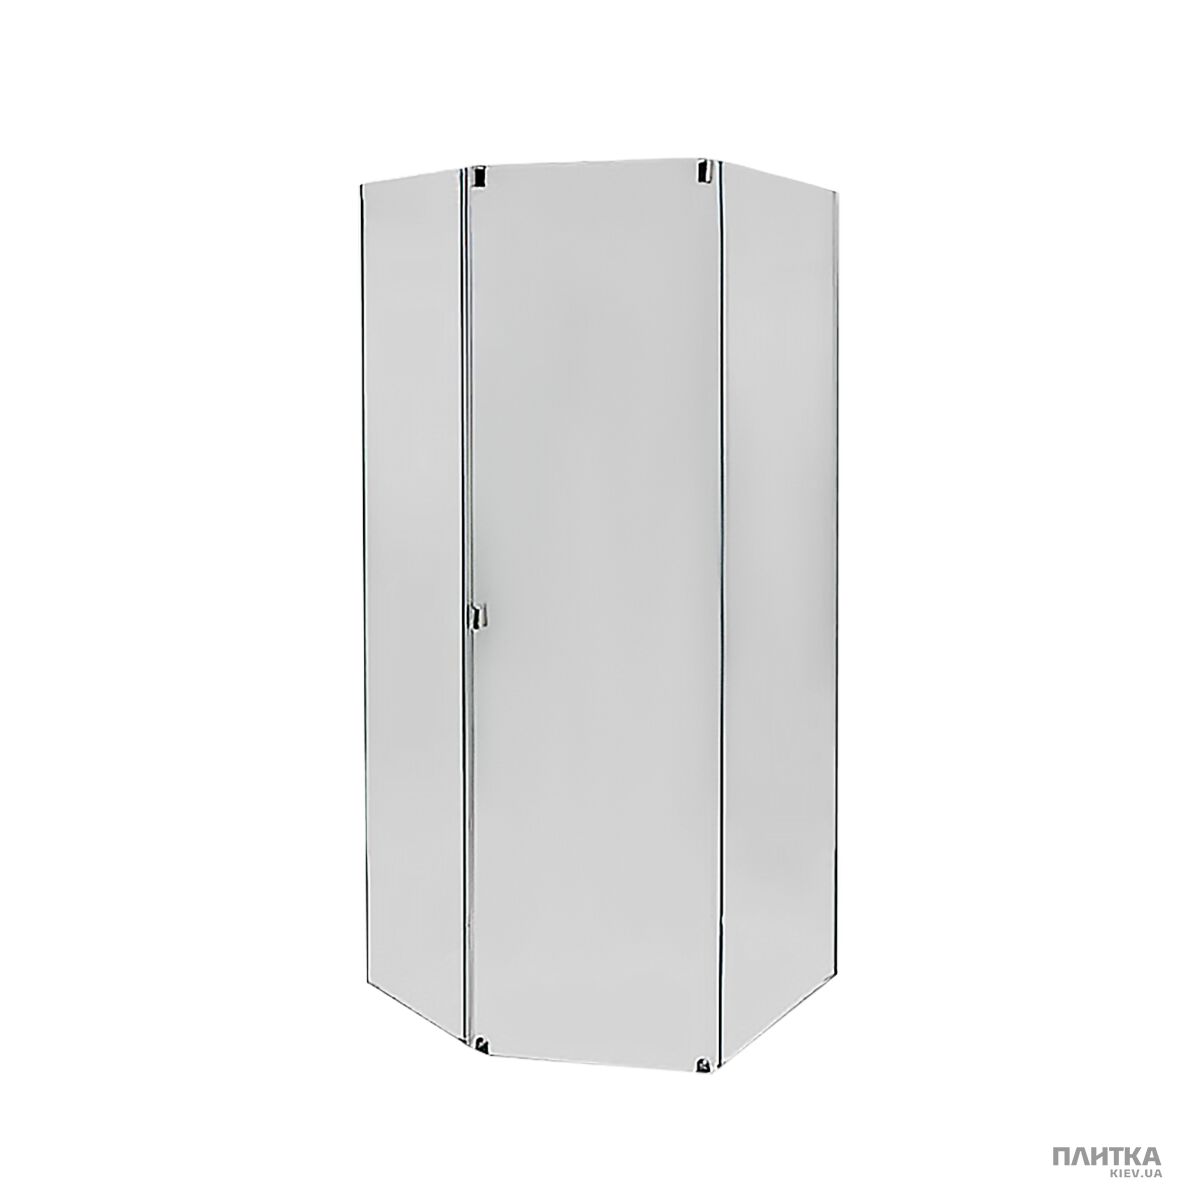 Комплектующие: IDO Showerama 8-5 4985015992 Передние стенки и двери душевой кабины, фронтальная панель белая серебро